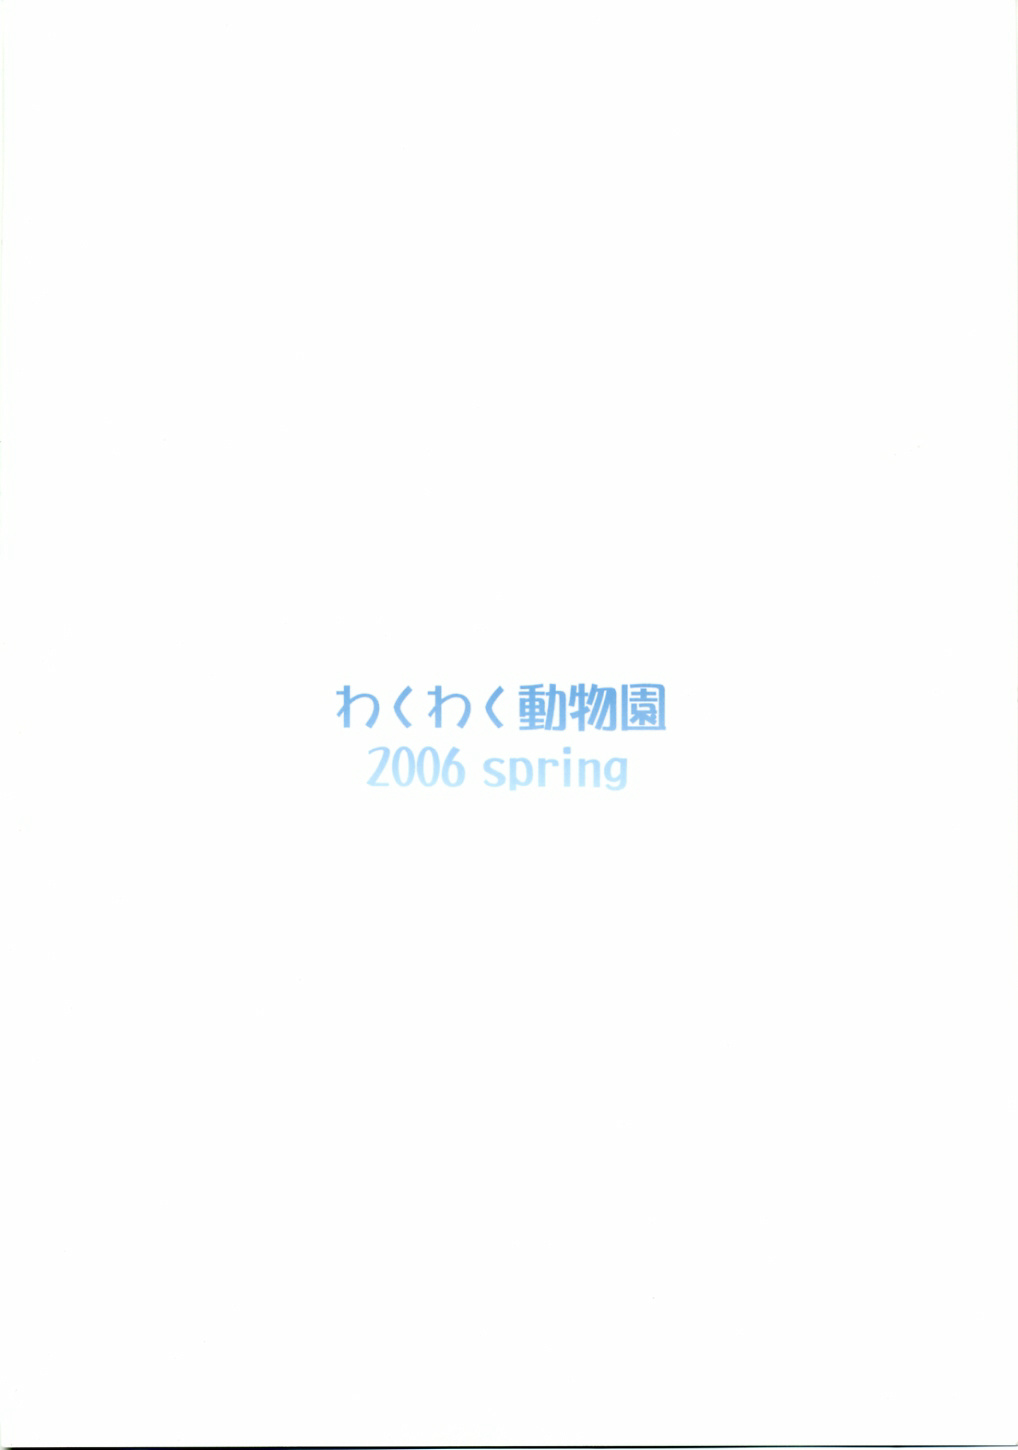 [わくわく動物園 (天王寺きつね)] blue snow blue scene.3